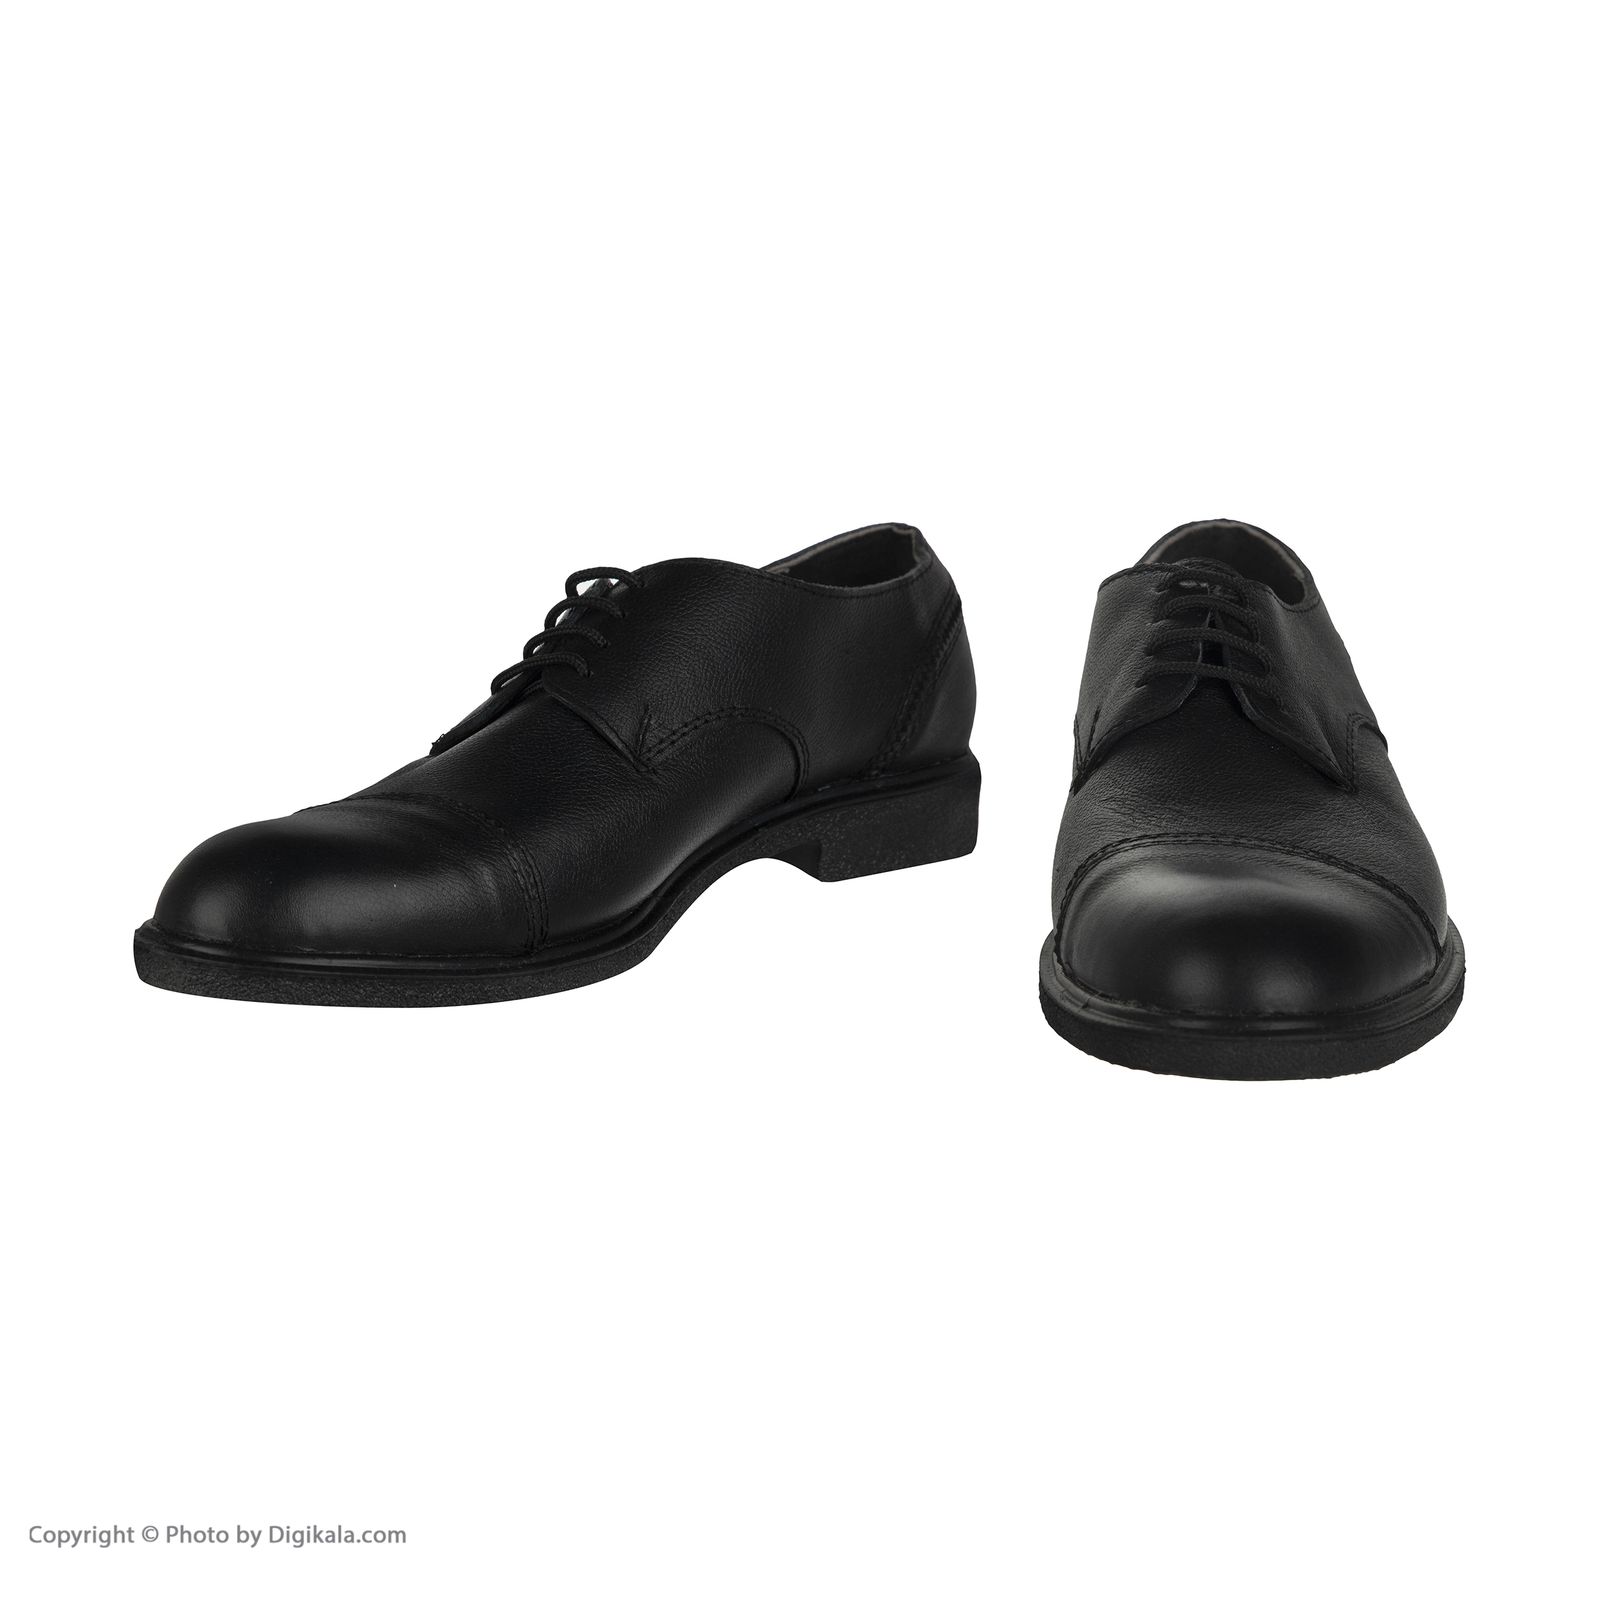  کفش مردانه سوته مدل 4870F503101 -  - 5